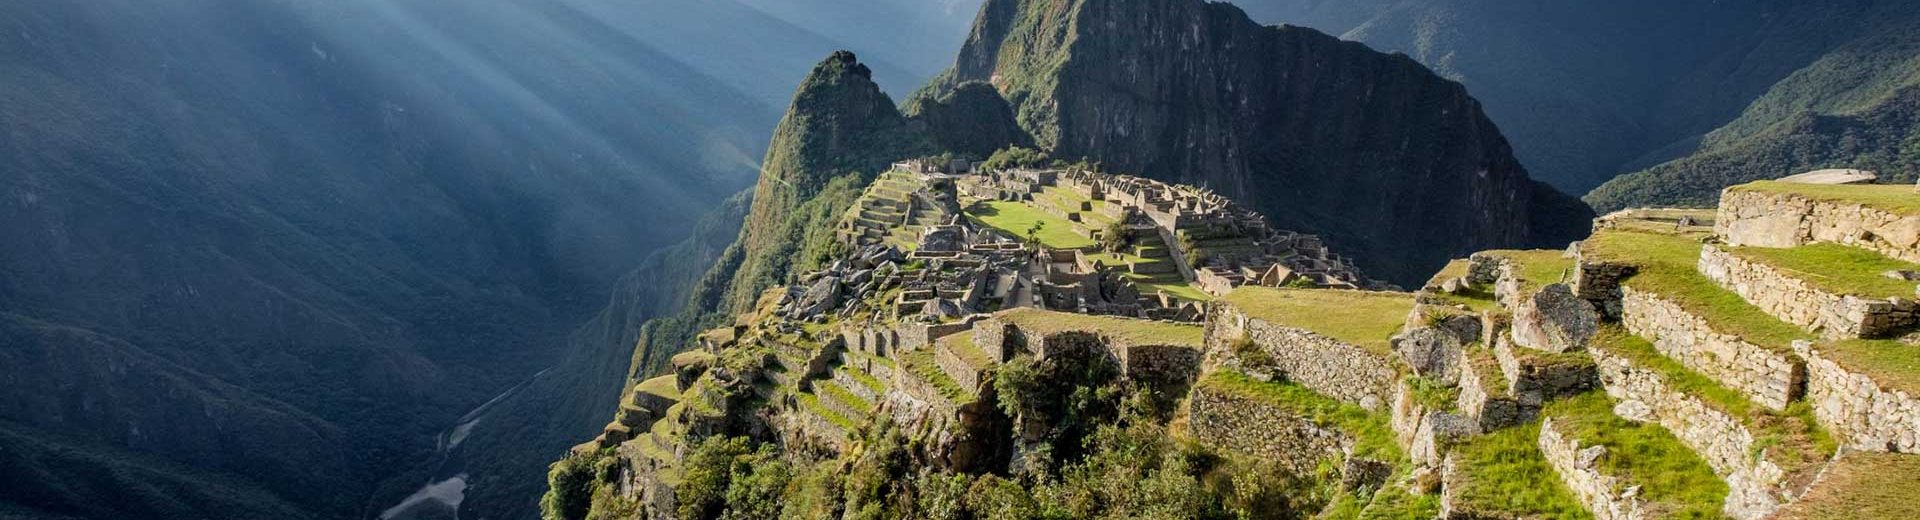 Quando ir para Machu Picchu: Dicas para sua viagem